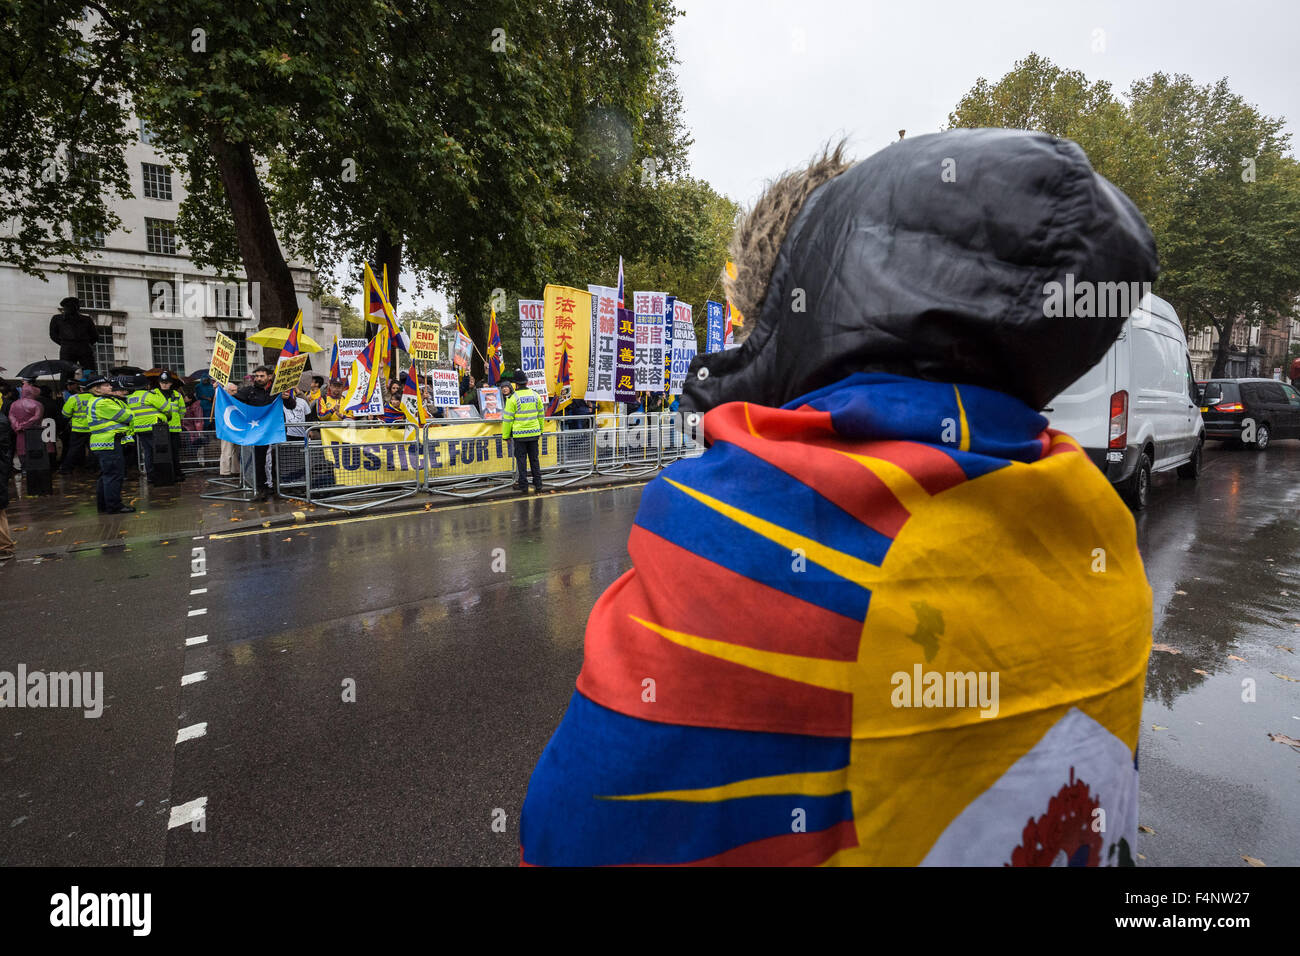 London, UK. 21. Oktober 2015. Free Tibet-Demonstranten Zusammenstoß mit Anhänger der pro-chinesische Regierung wartet auf Präsident Xi Jinping Ankunft zur Downing Street am Tag zwei von seinen offiziellen Status in UK Credit besuchen: Guy Corbishley/Alamy Live News Stockfoto